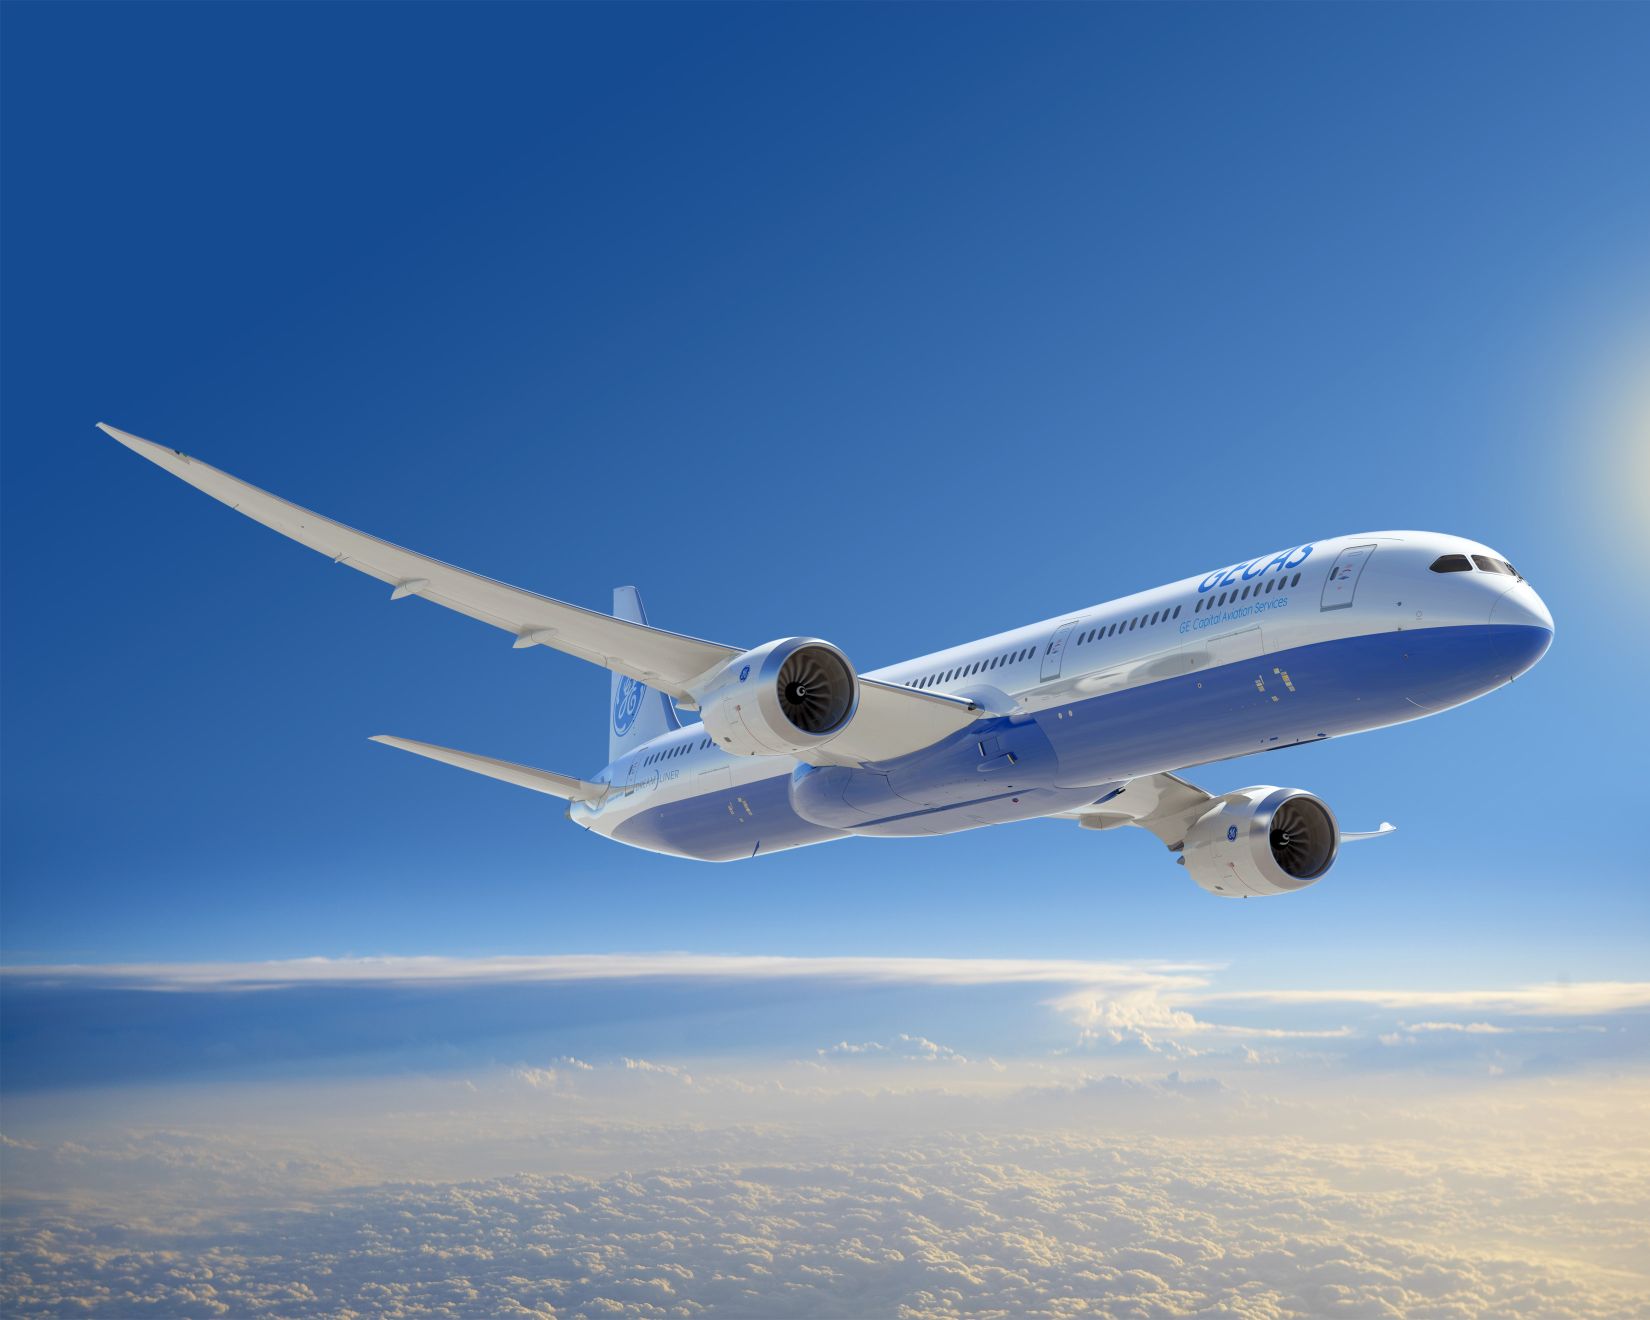 Ha nincs teljes terhelés, repülhet majdnem olyan hosszú vonalakat, mint a kisebb 787-esek